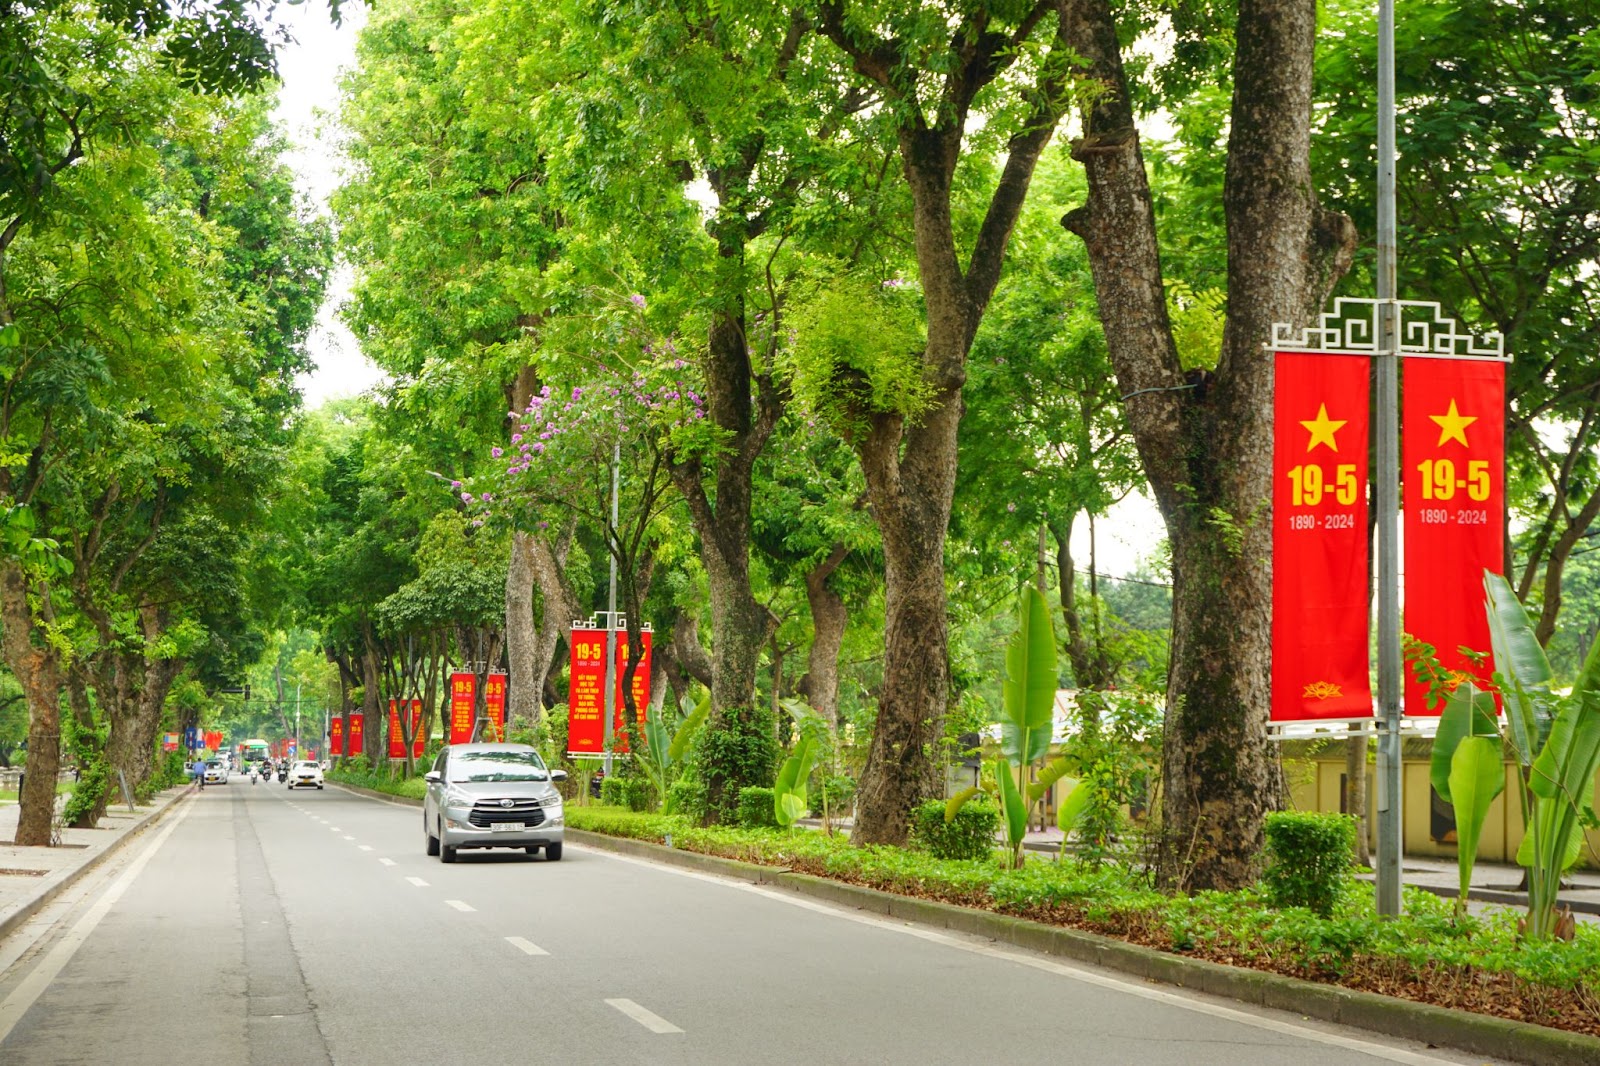 Hà Nội rợp sắc cờ hoa kỷ niệm ngày sinh Chủ tịch Hồ Chí Minh - Ảnh 8.